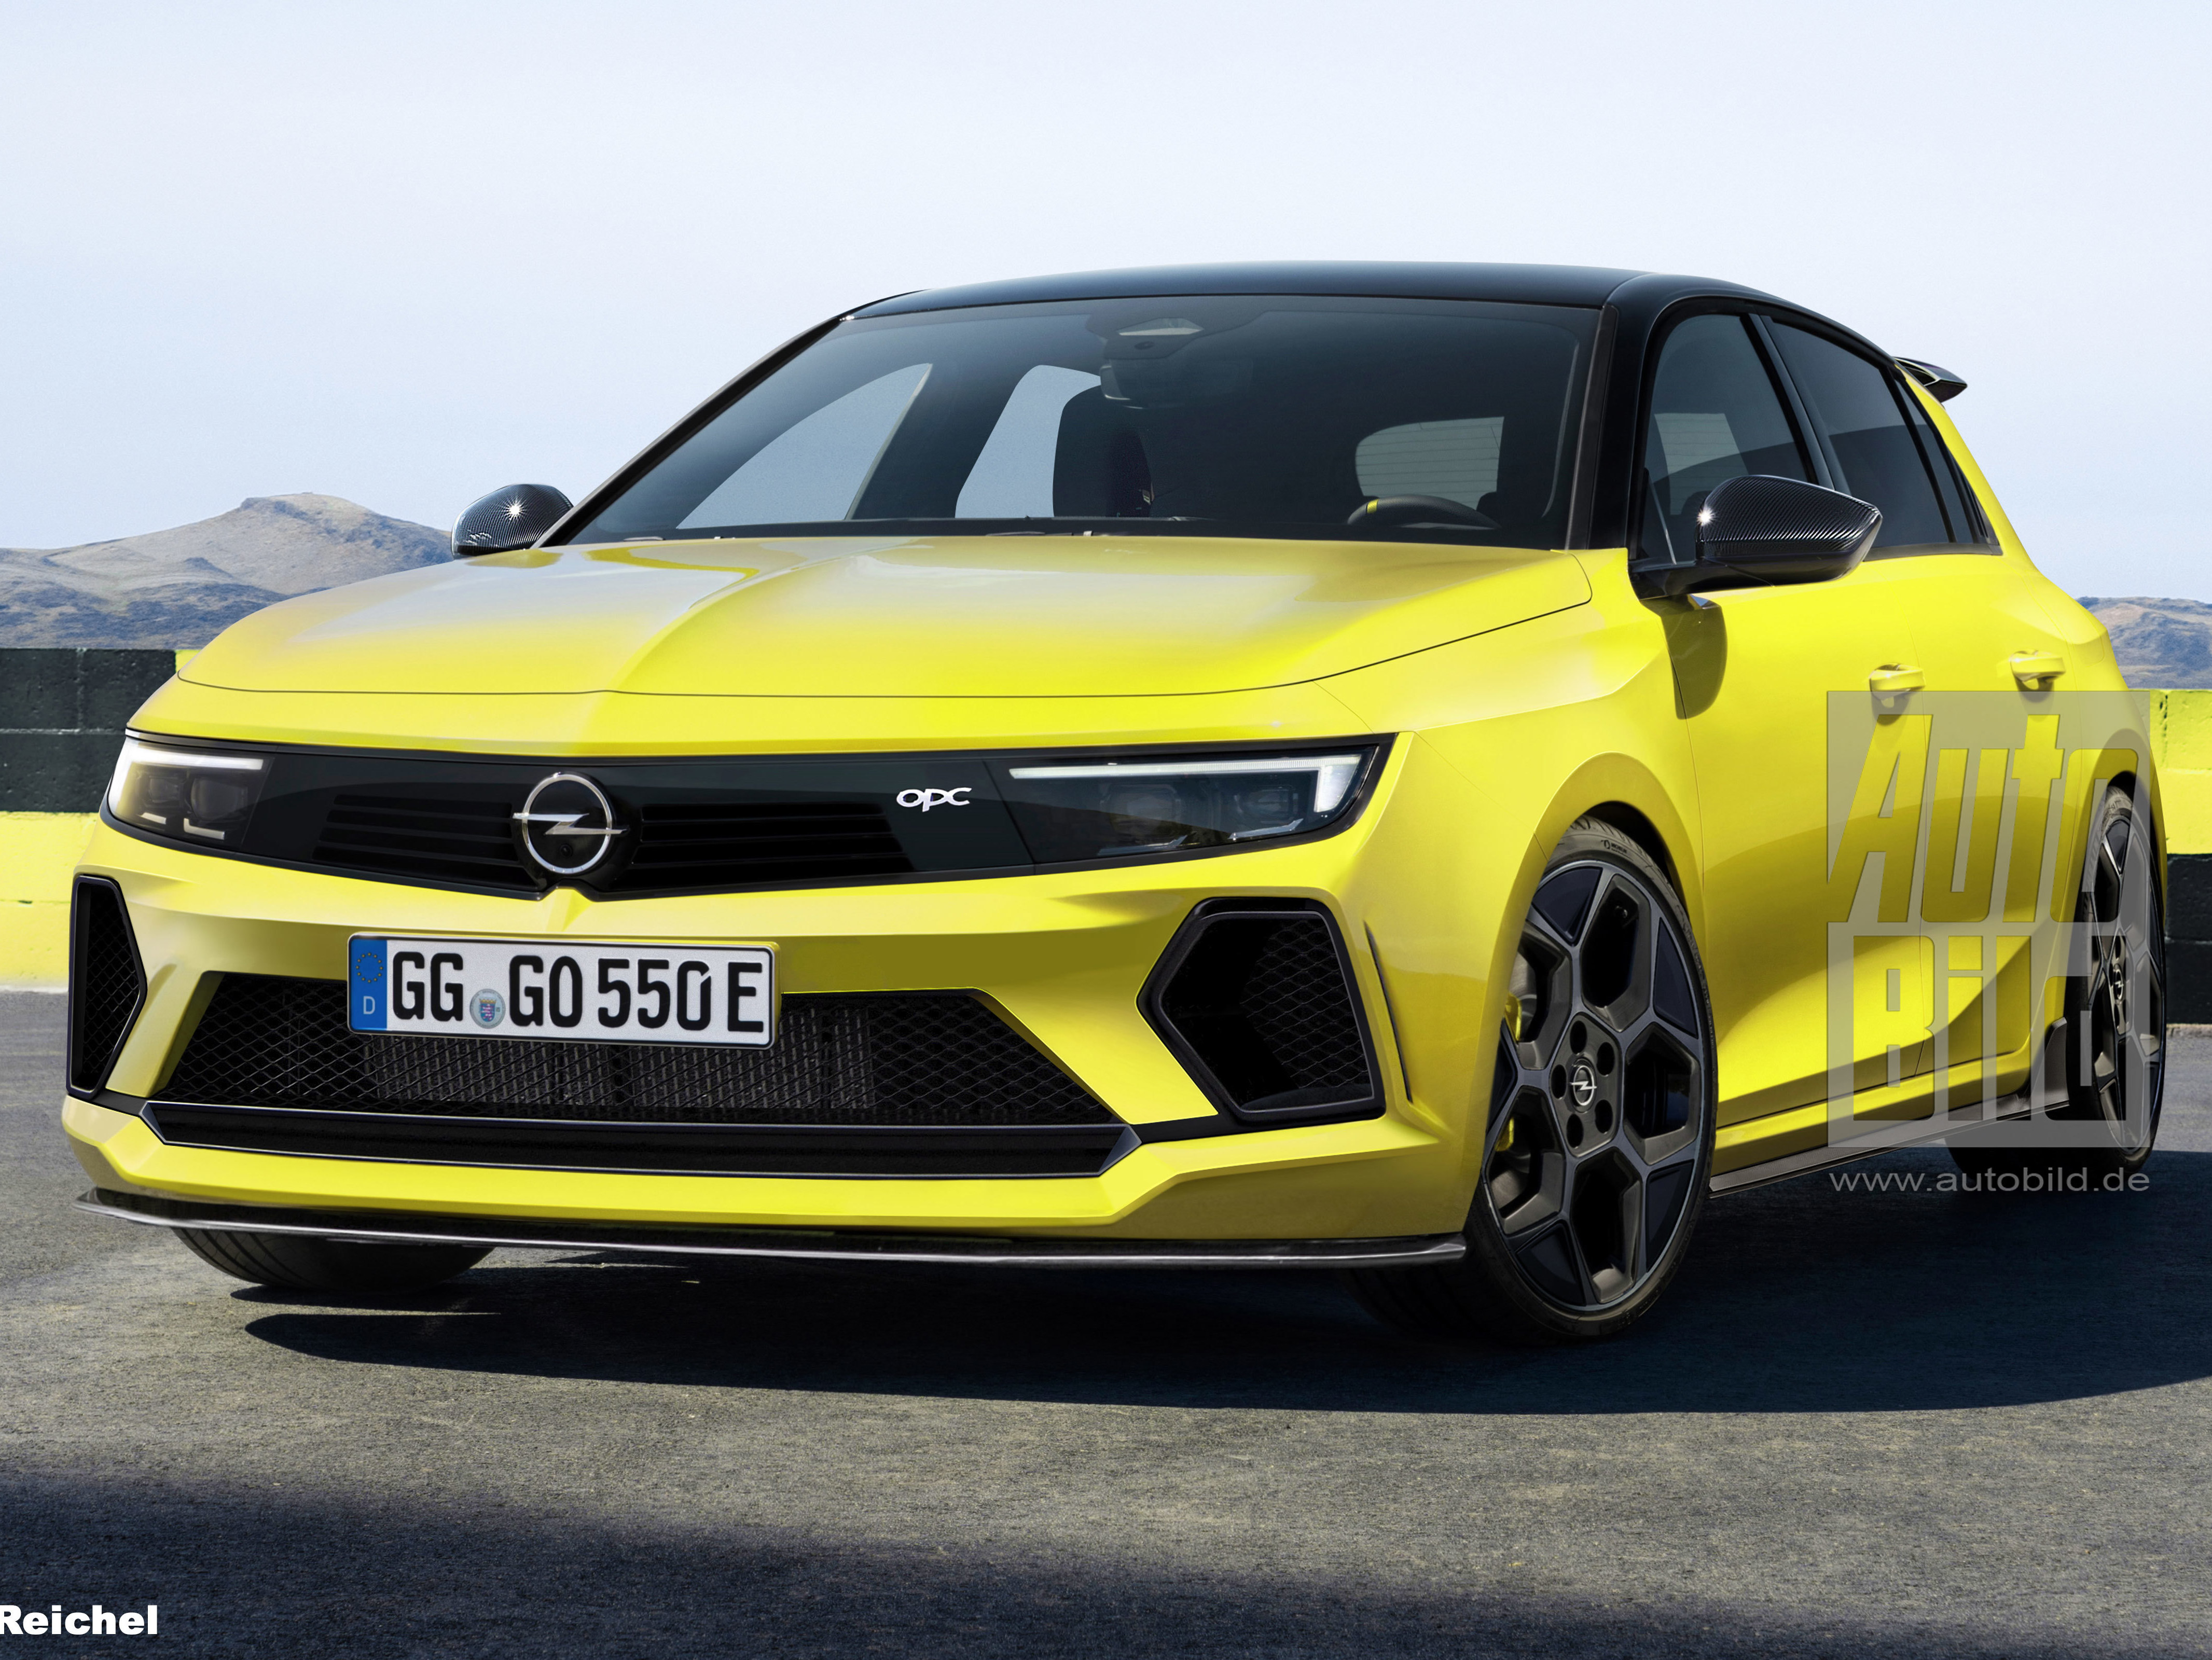 Opel Astra L OPC: Allrad und 300 PS starker Plug-in-Hybrid? - AUTO